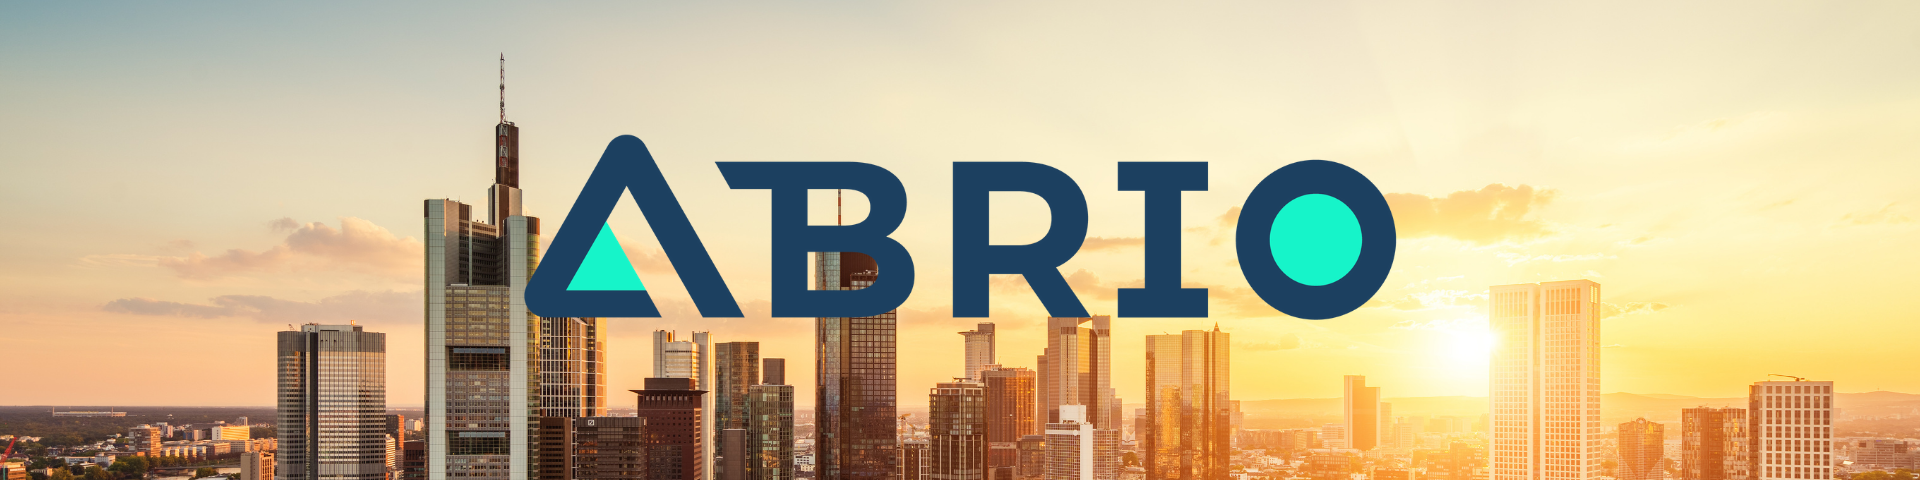 ABRIO / startup von Frankfurt a. Main / Background